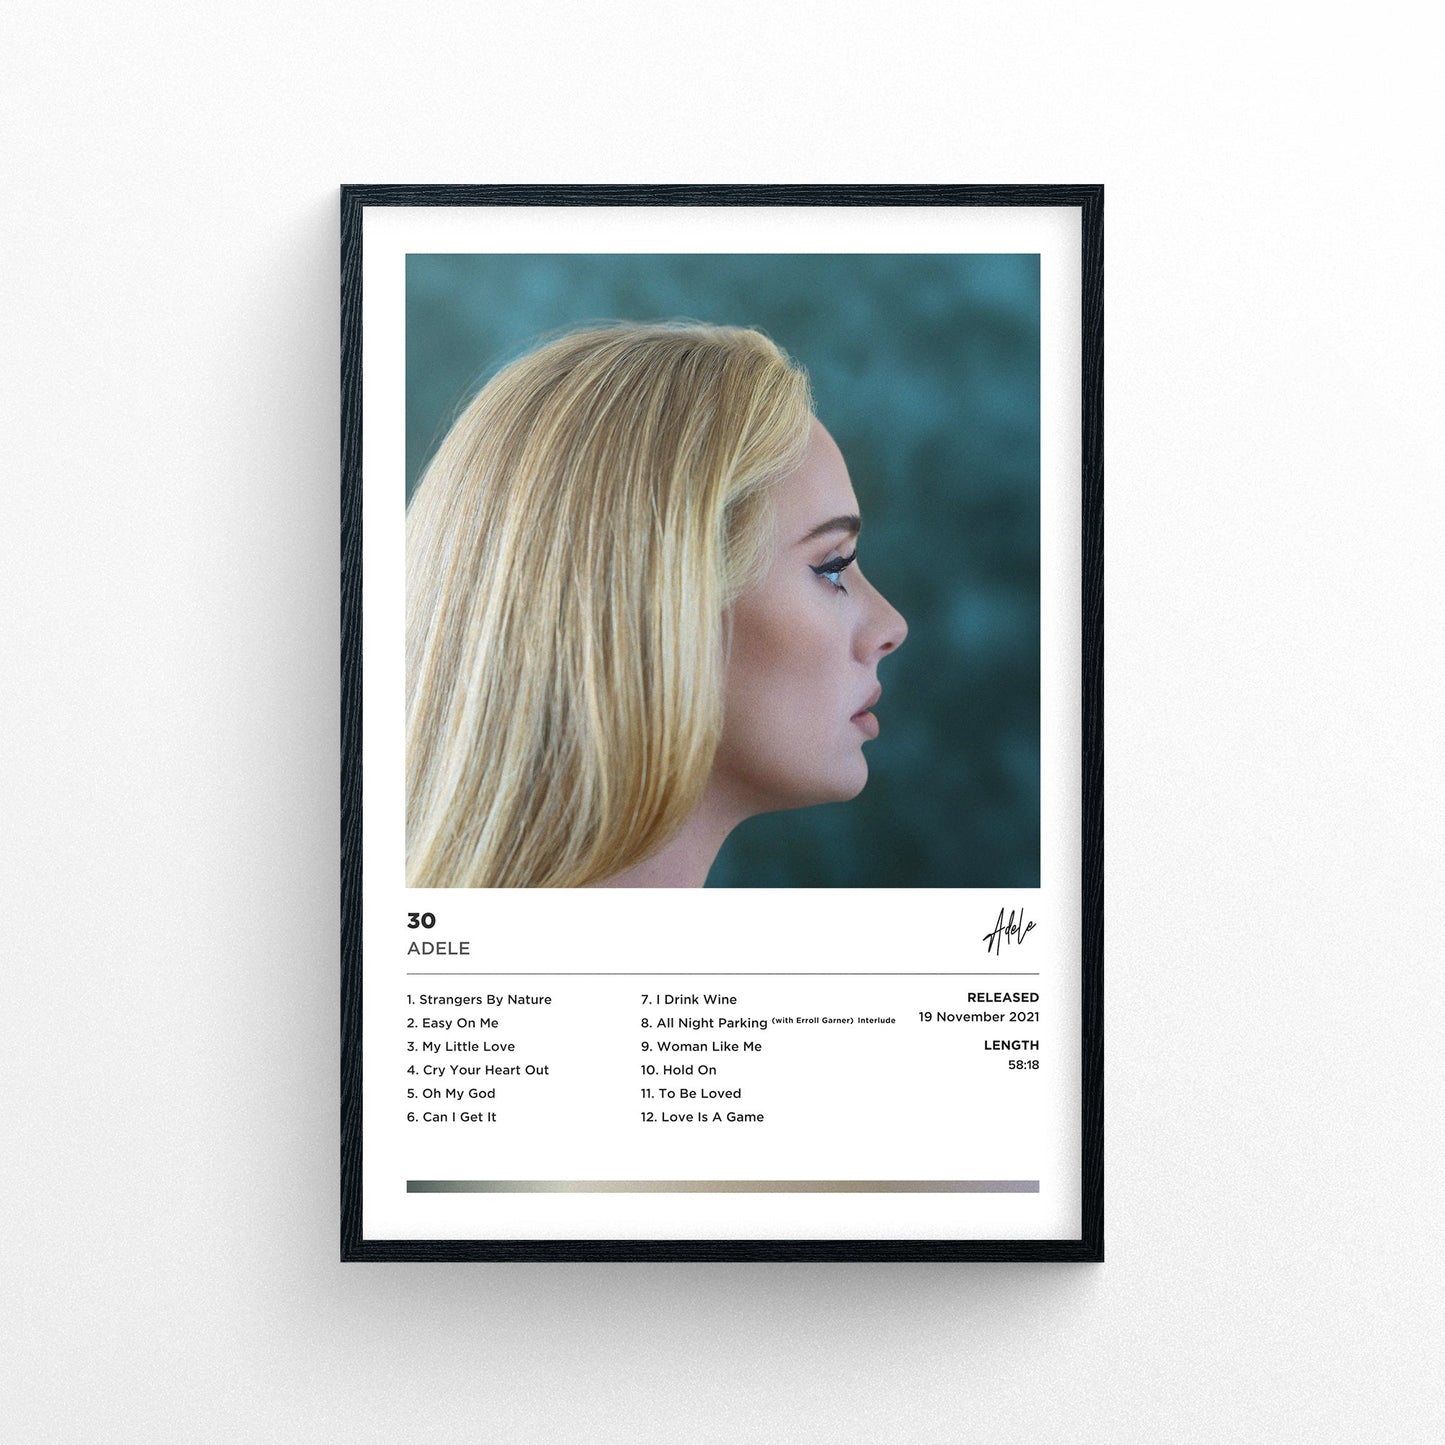 Adele - 30 Framed Poster Print | Polaroid Style | Album Cover Artwork